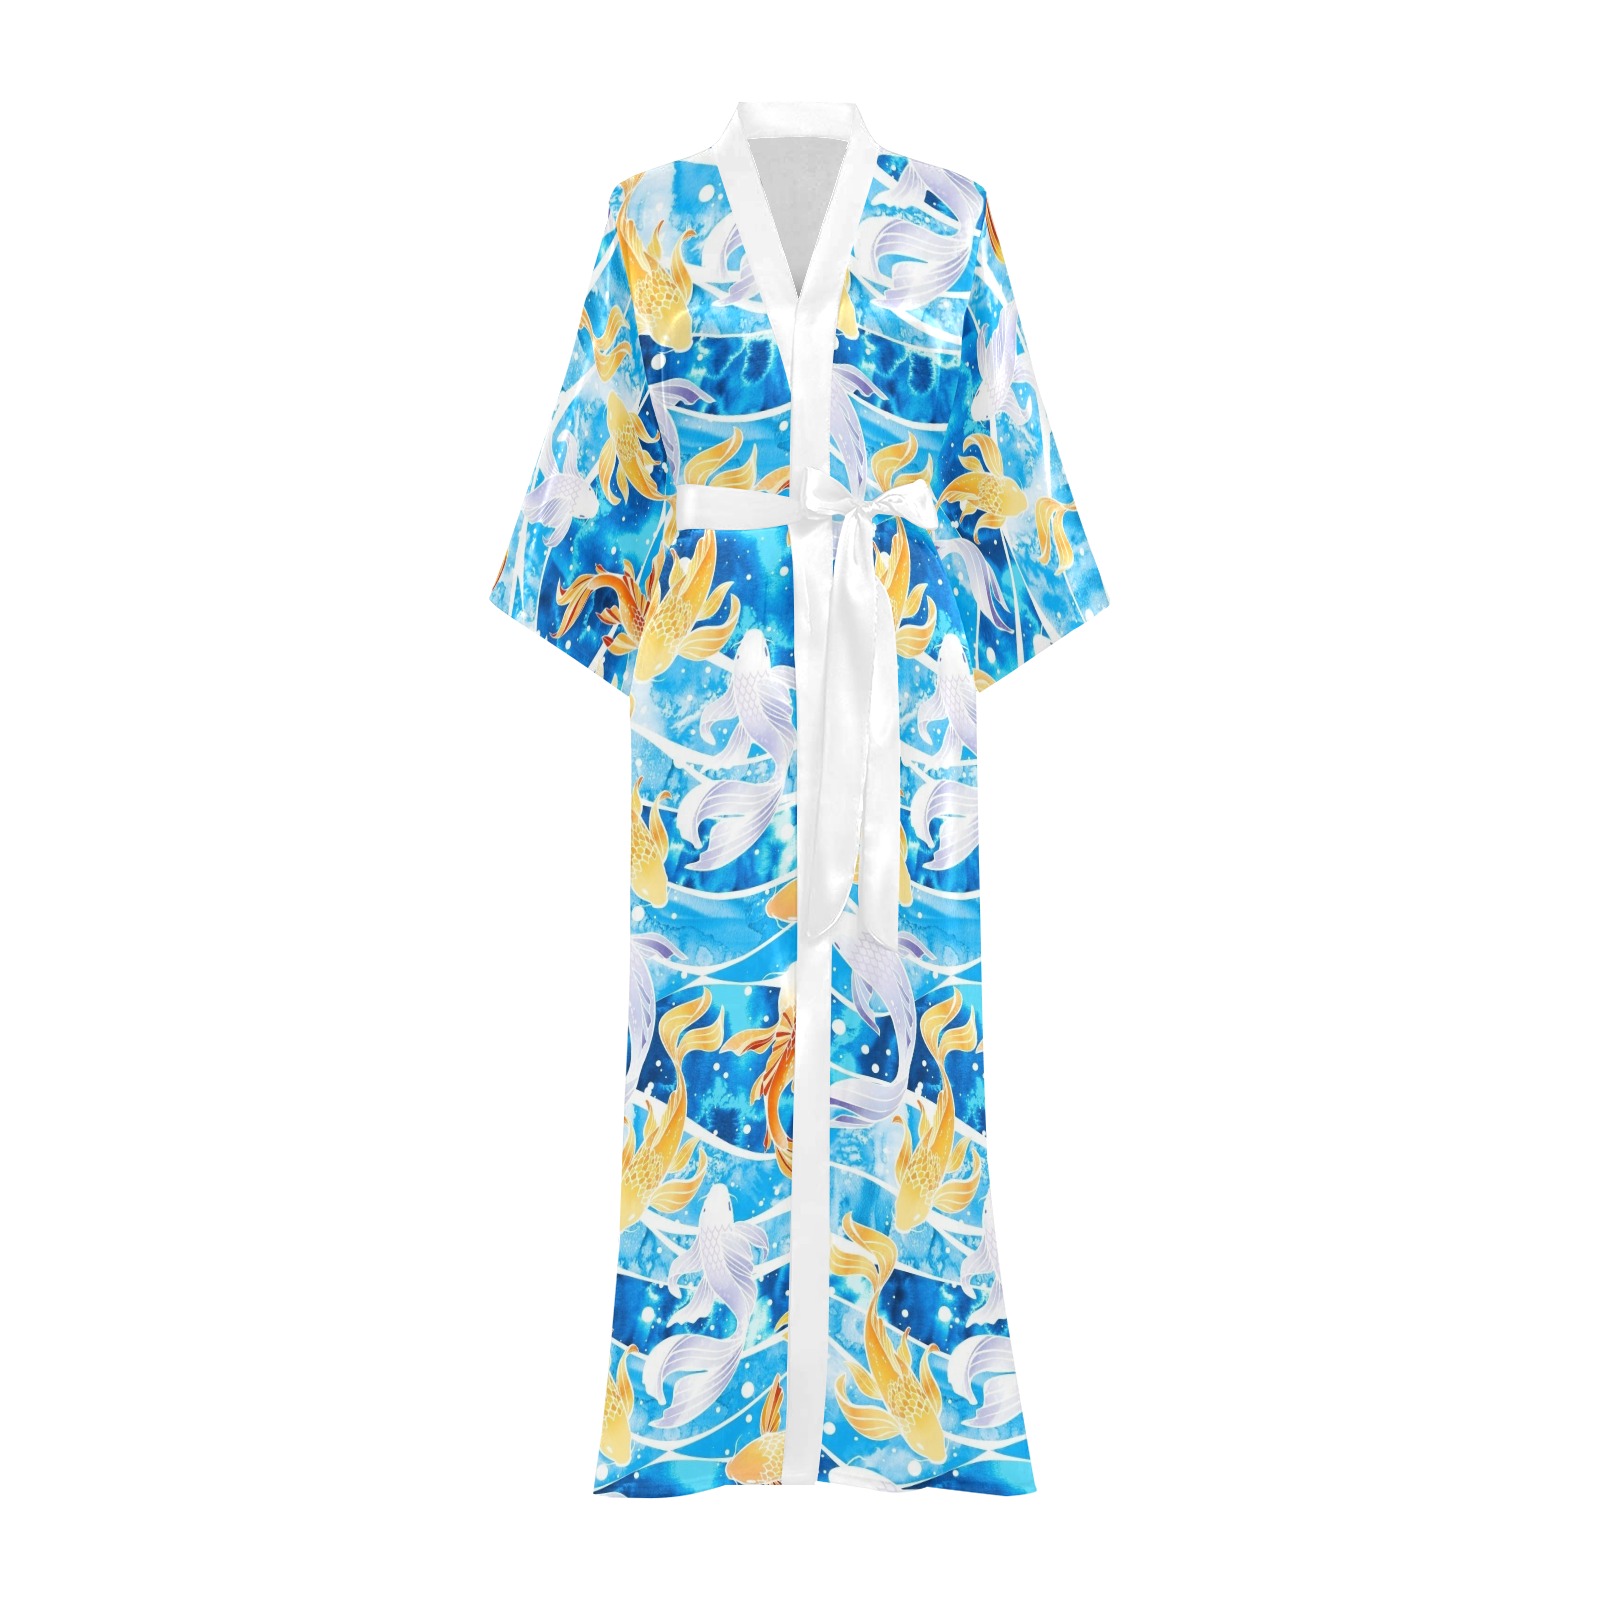 KOI FISH 001 Long Kimono Robe